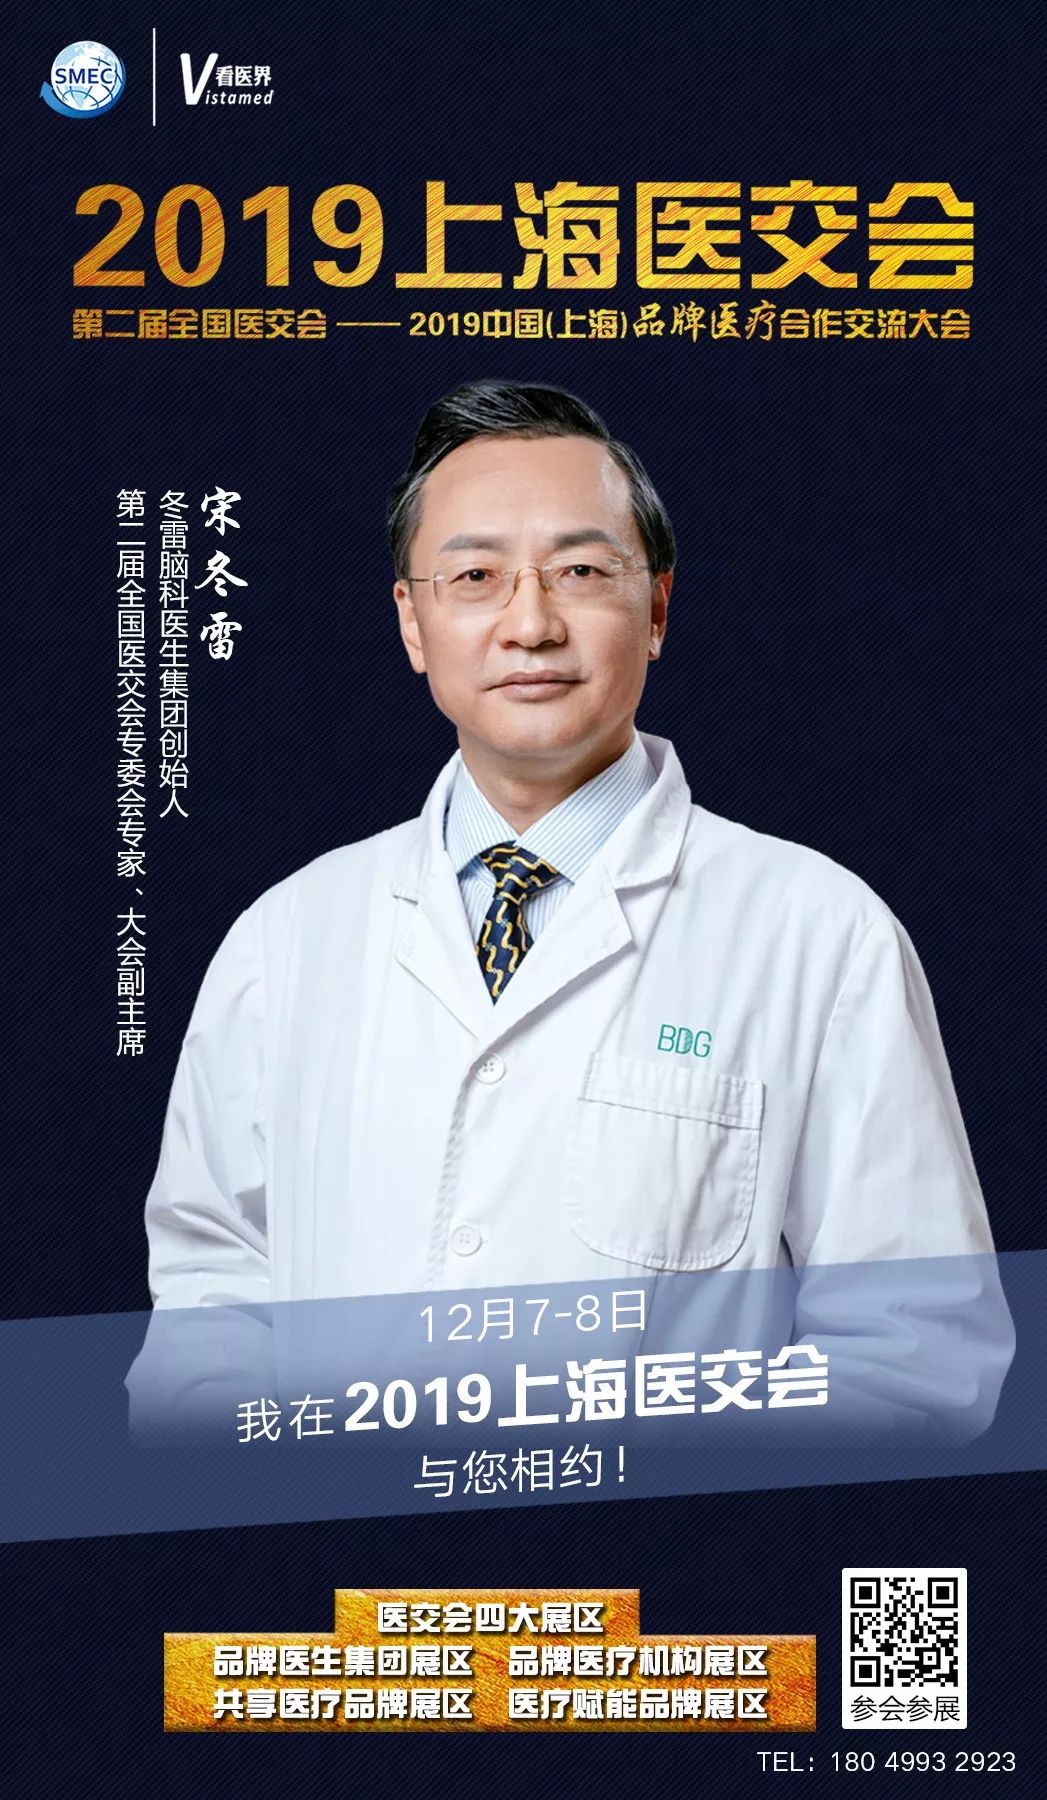 与冬雷脑科医生集团合作的机会来了 19上海医交会 看医界 微信公众号文章阅读 Wemp